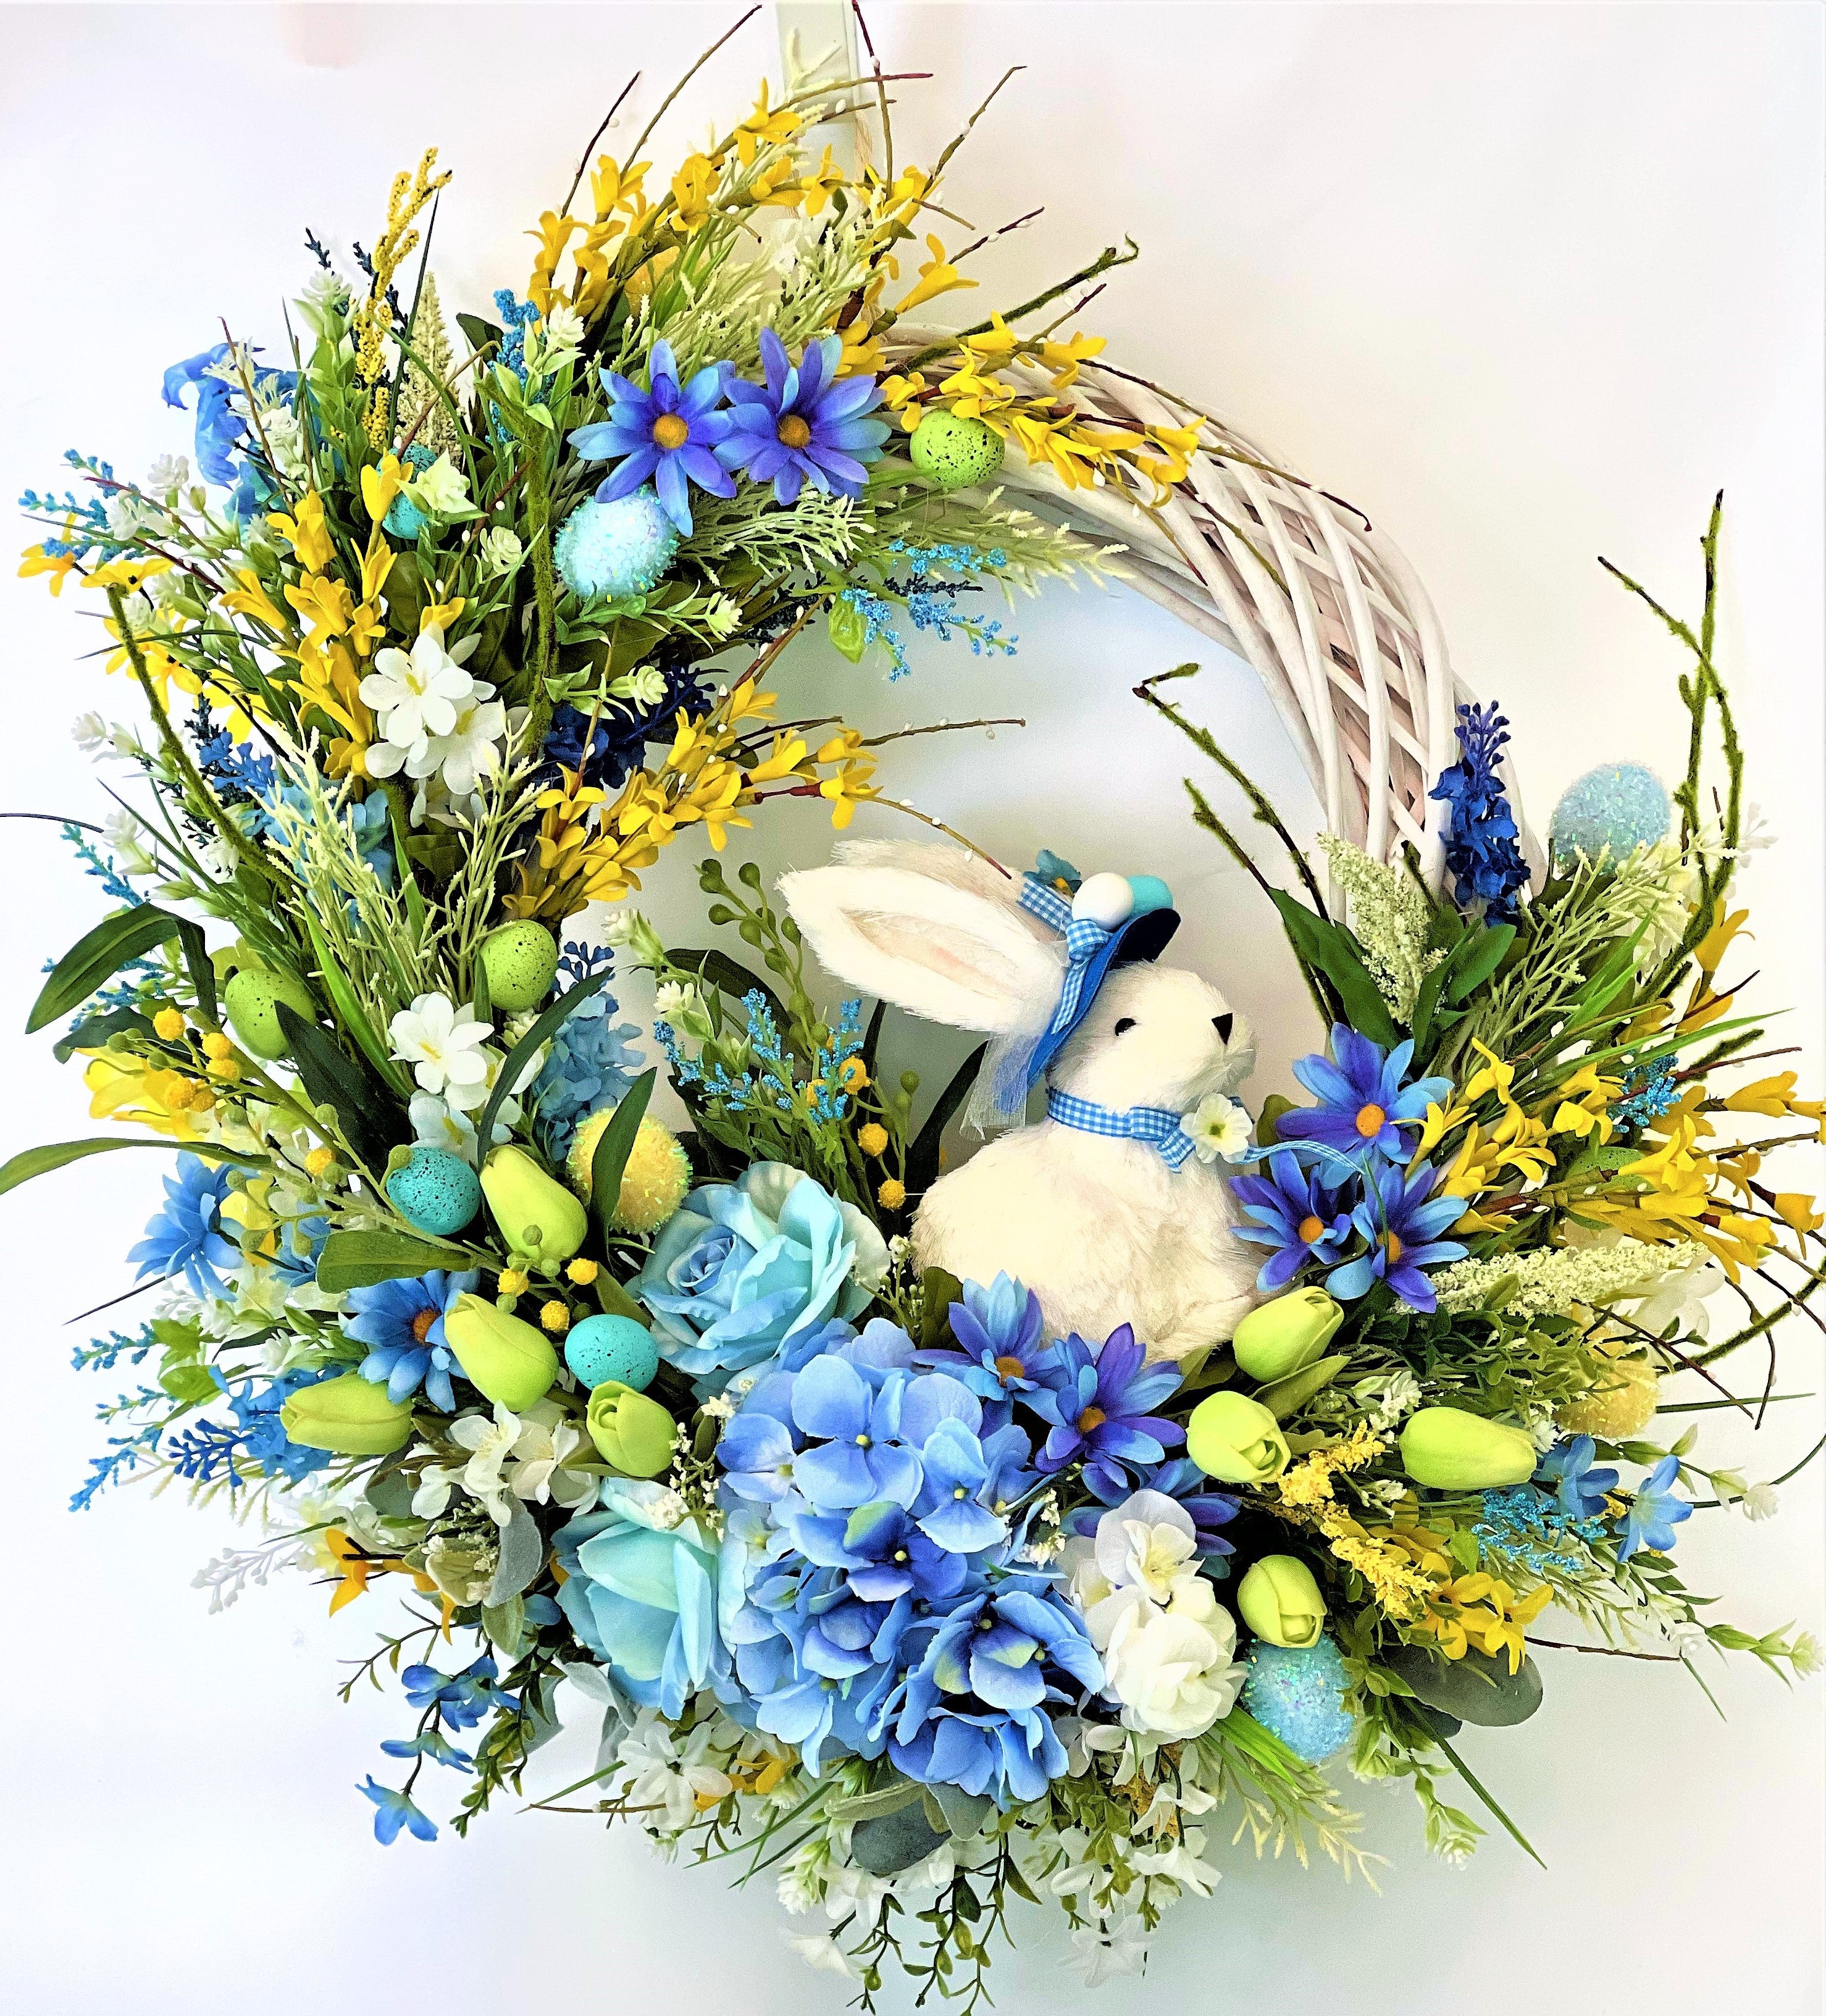 Mr. Bunny & Floral Wreath, Springtime/Summer Wreath 27"